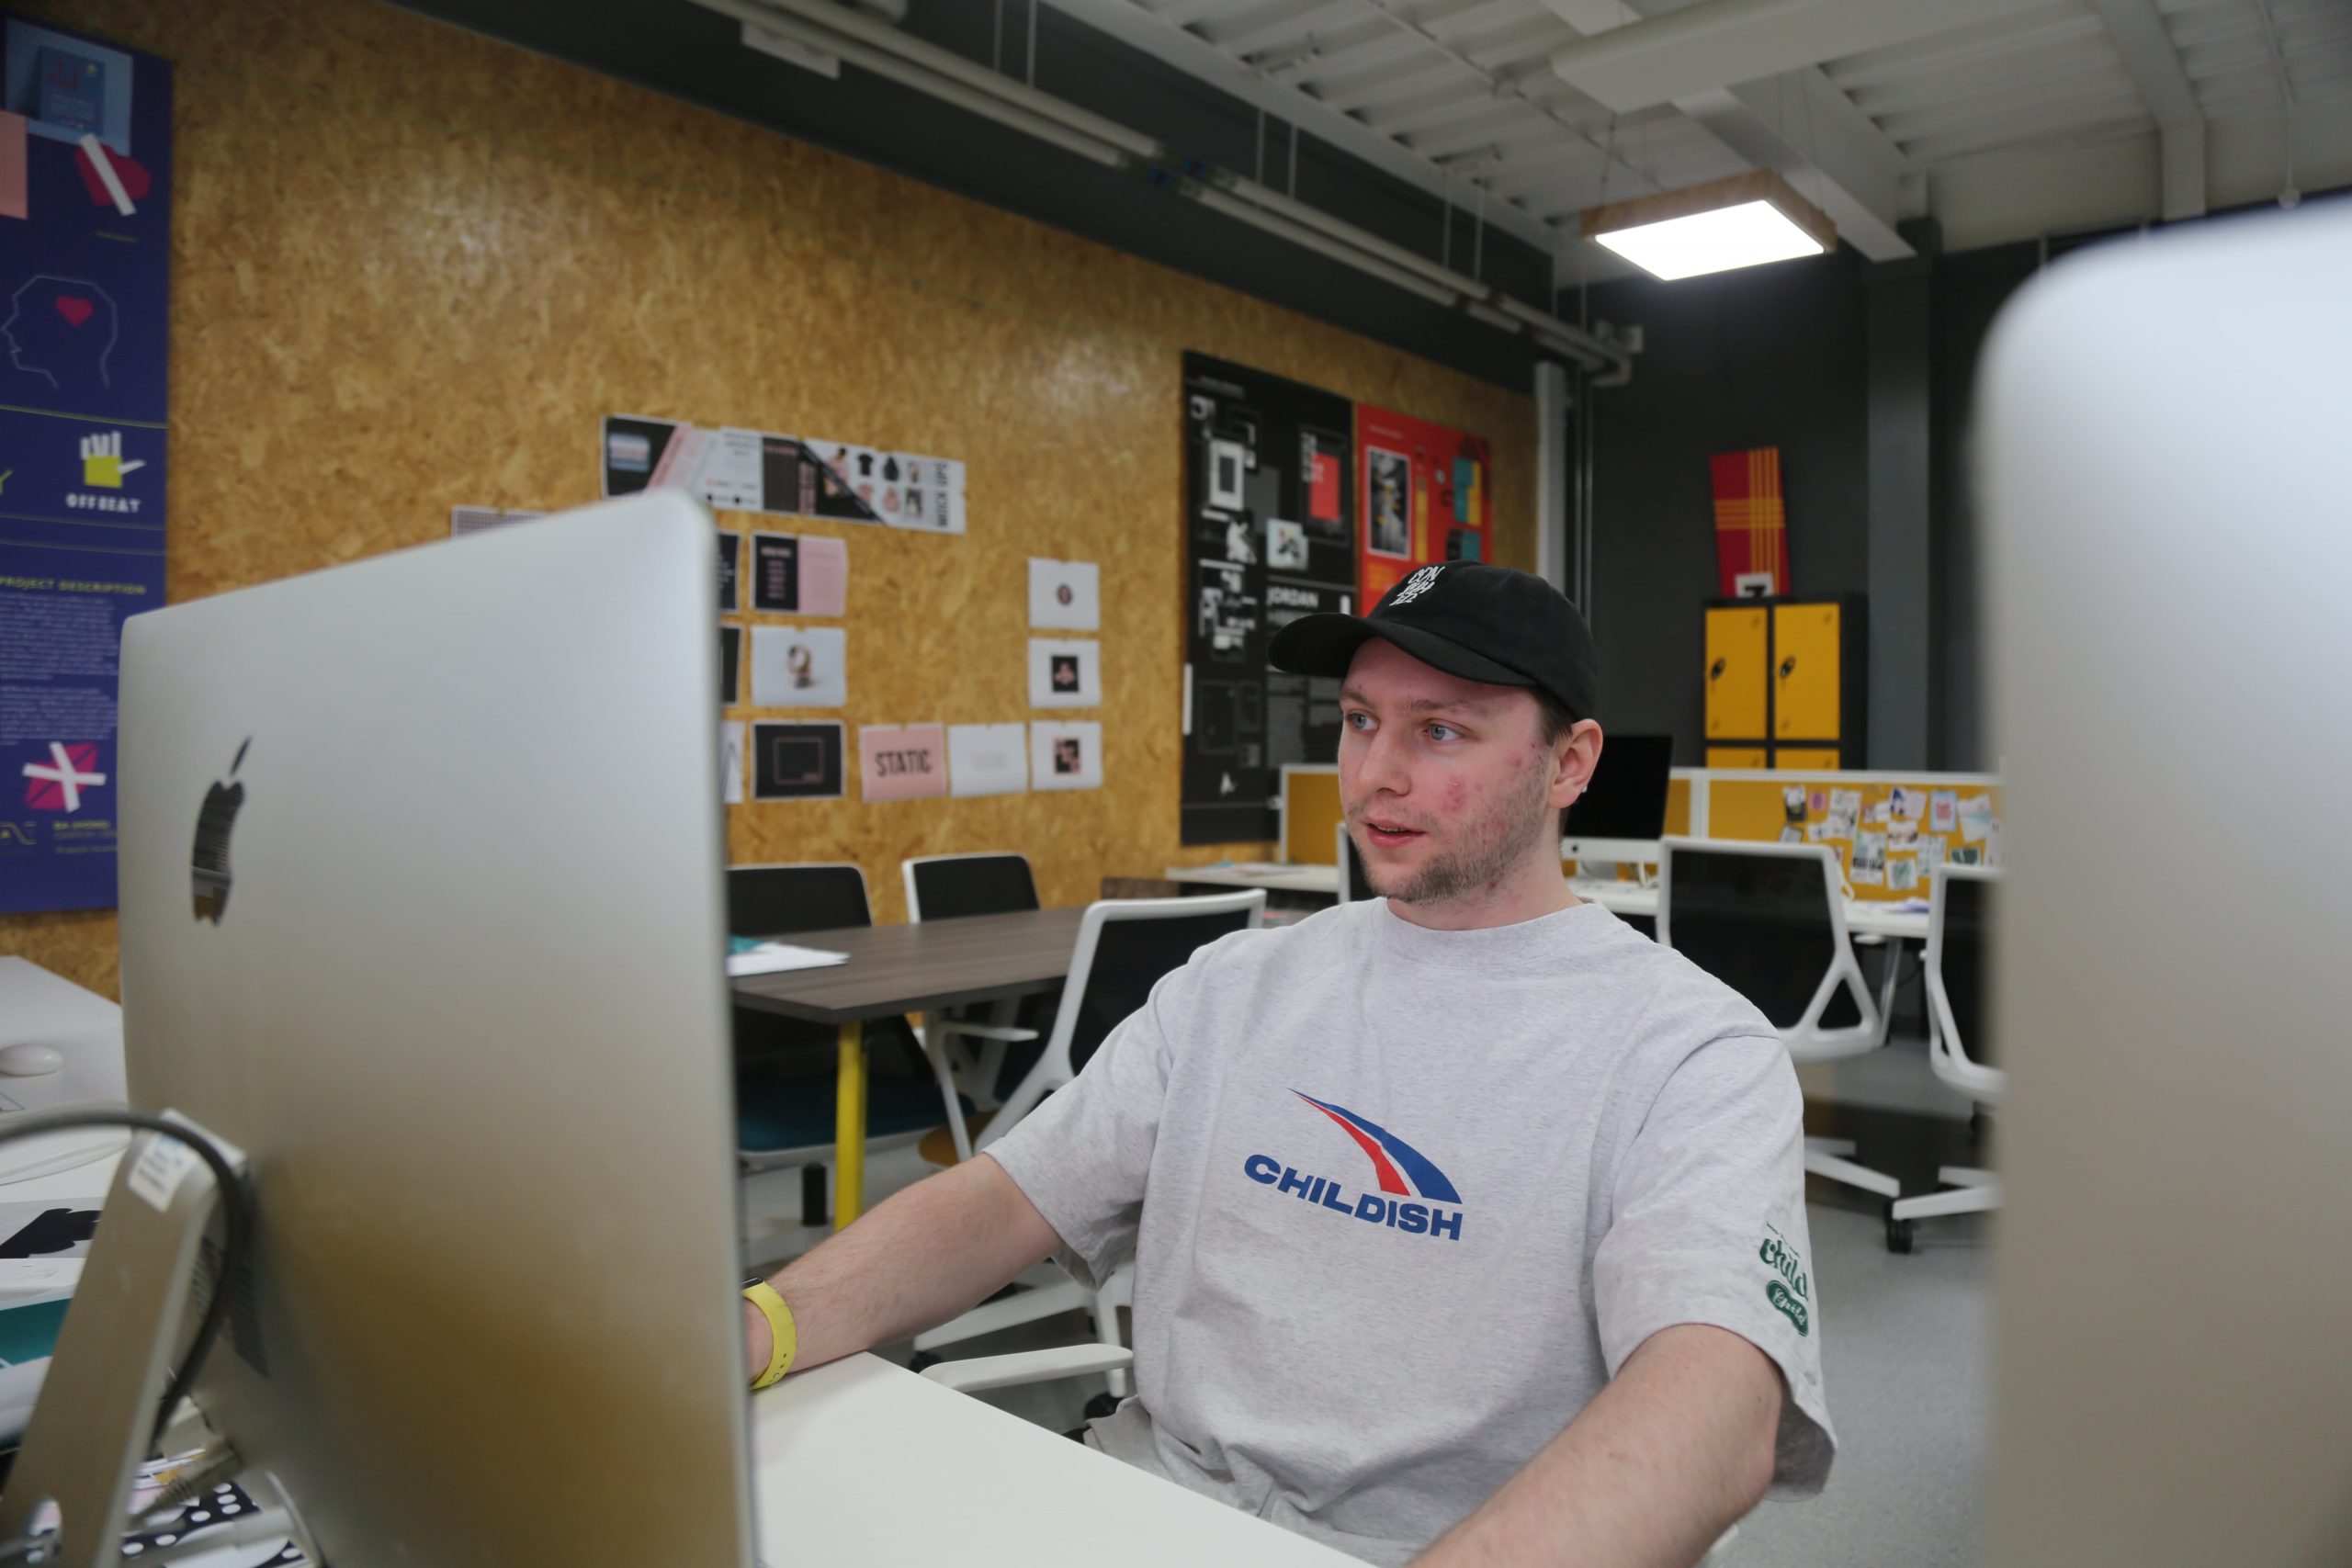 Man looks at mac book screen in art studio